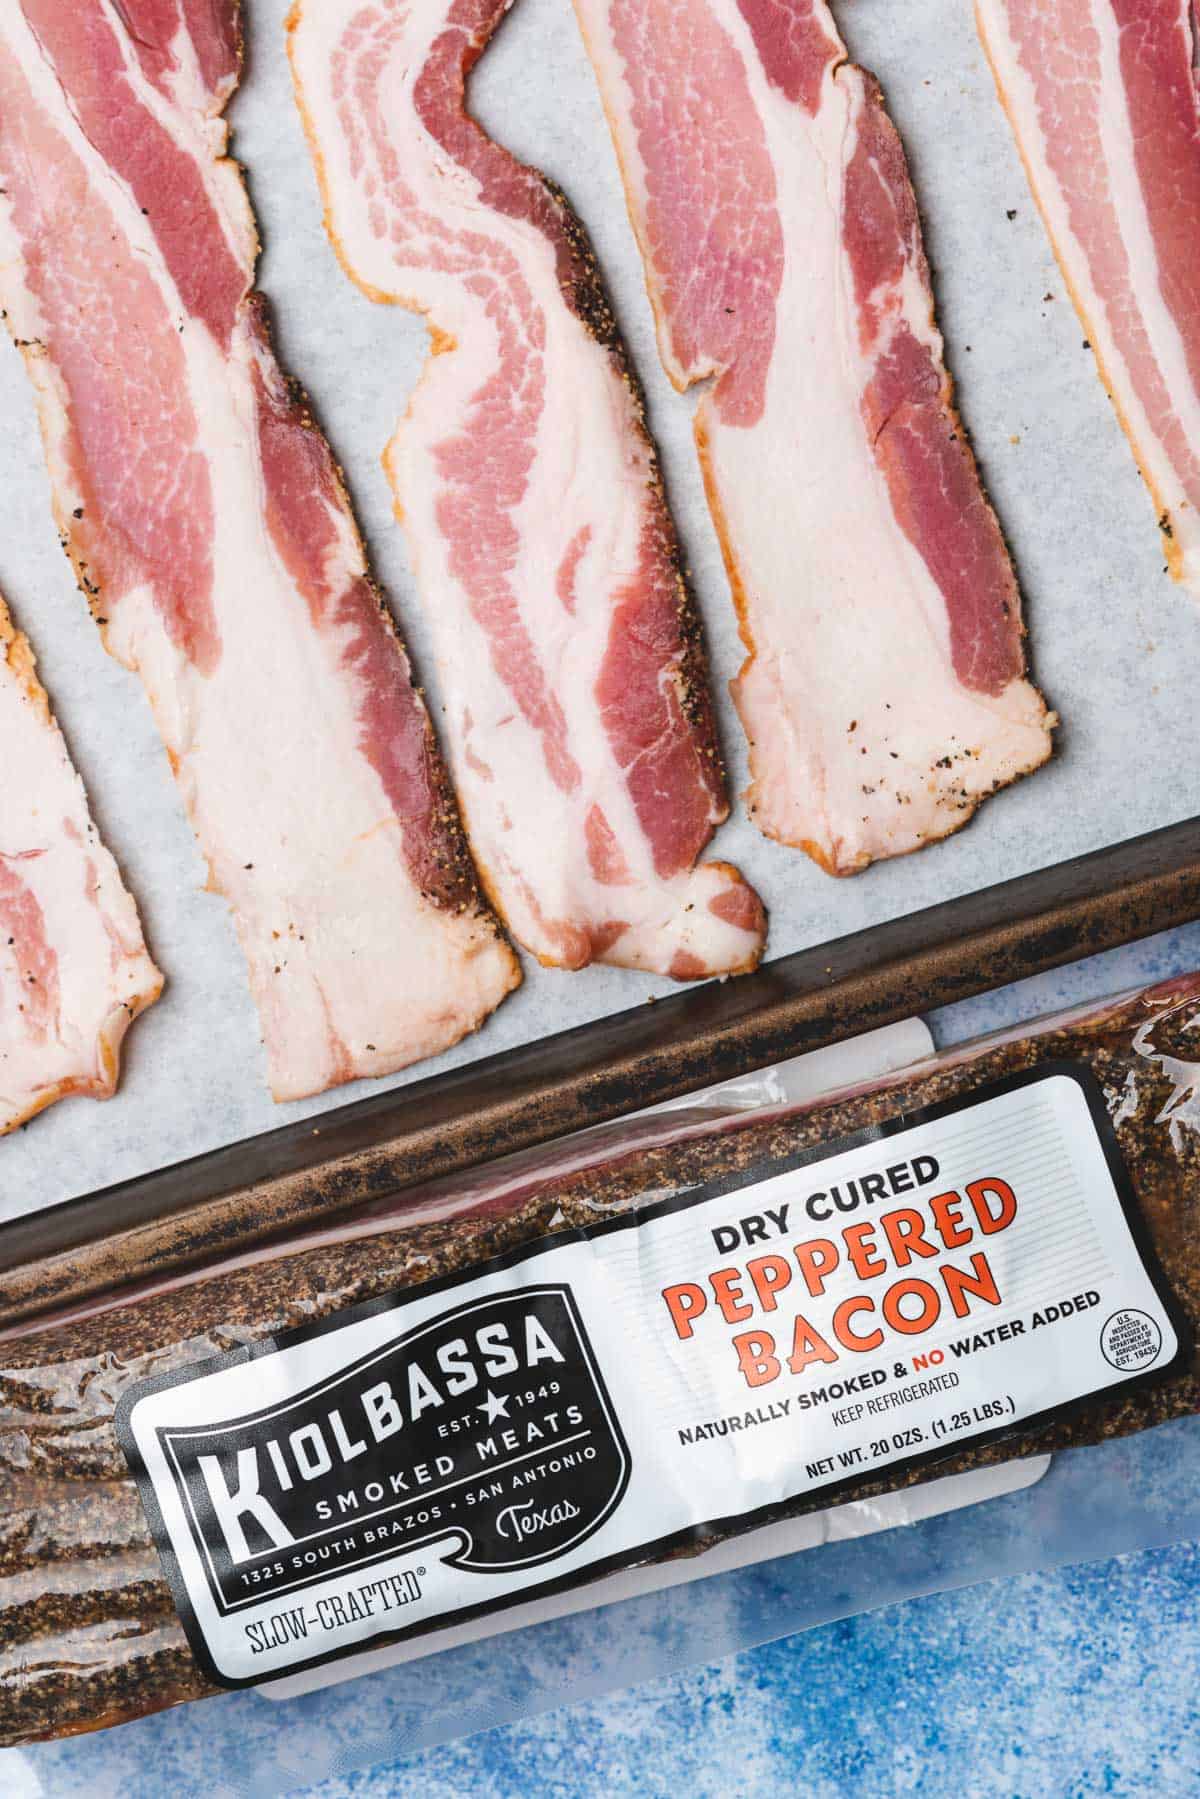 raw kiolbassa smoked meats raw bacon on a baking sheet with a package of kiolbassa smoked meats bacon